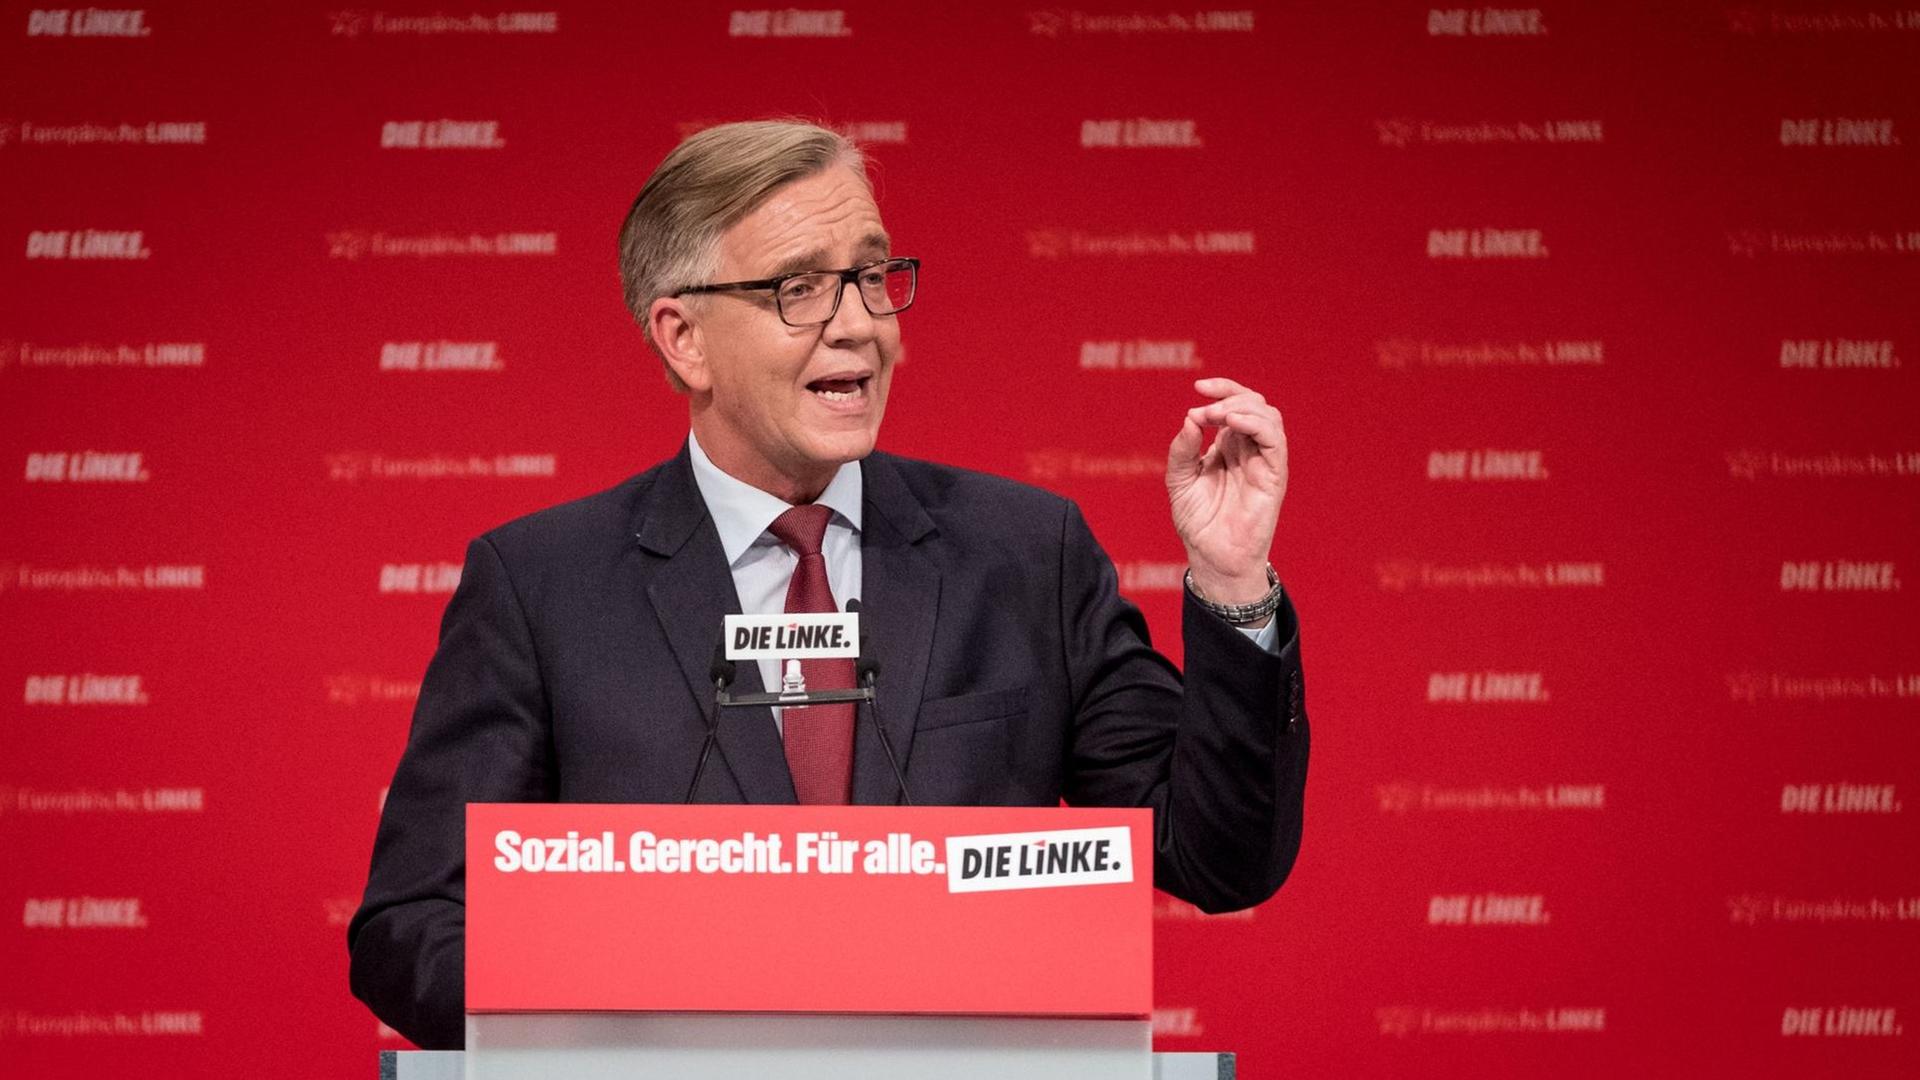 Der Spitzenkandidat der Linken für die Bundestagswahl 2017, Dietmar Bartsch, spricht während des Bundesparteitags der Linken in Hannover.